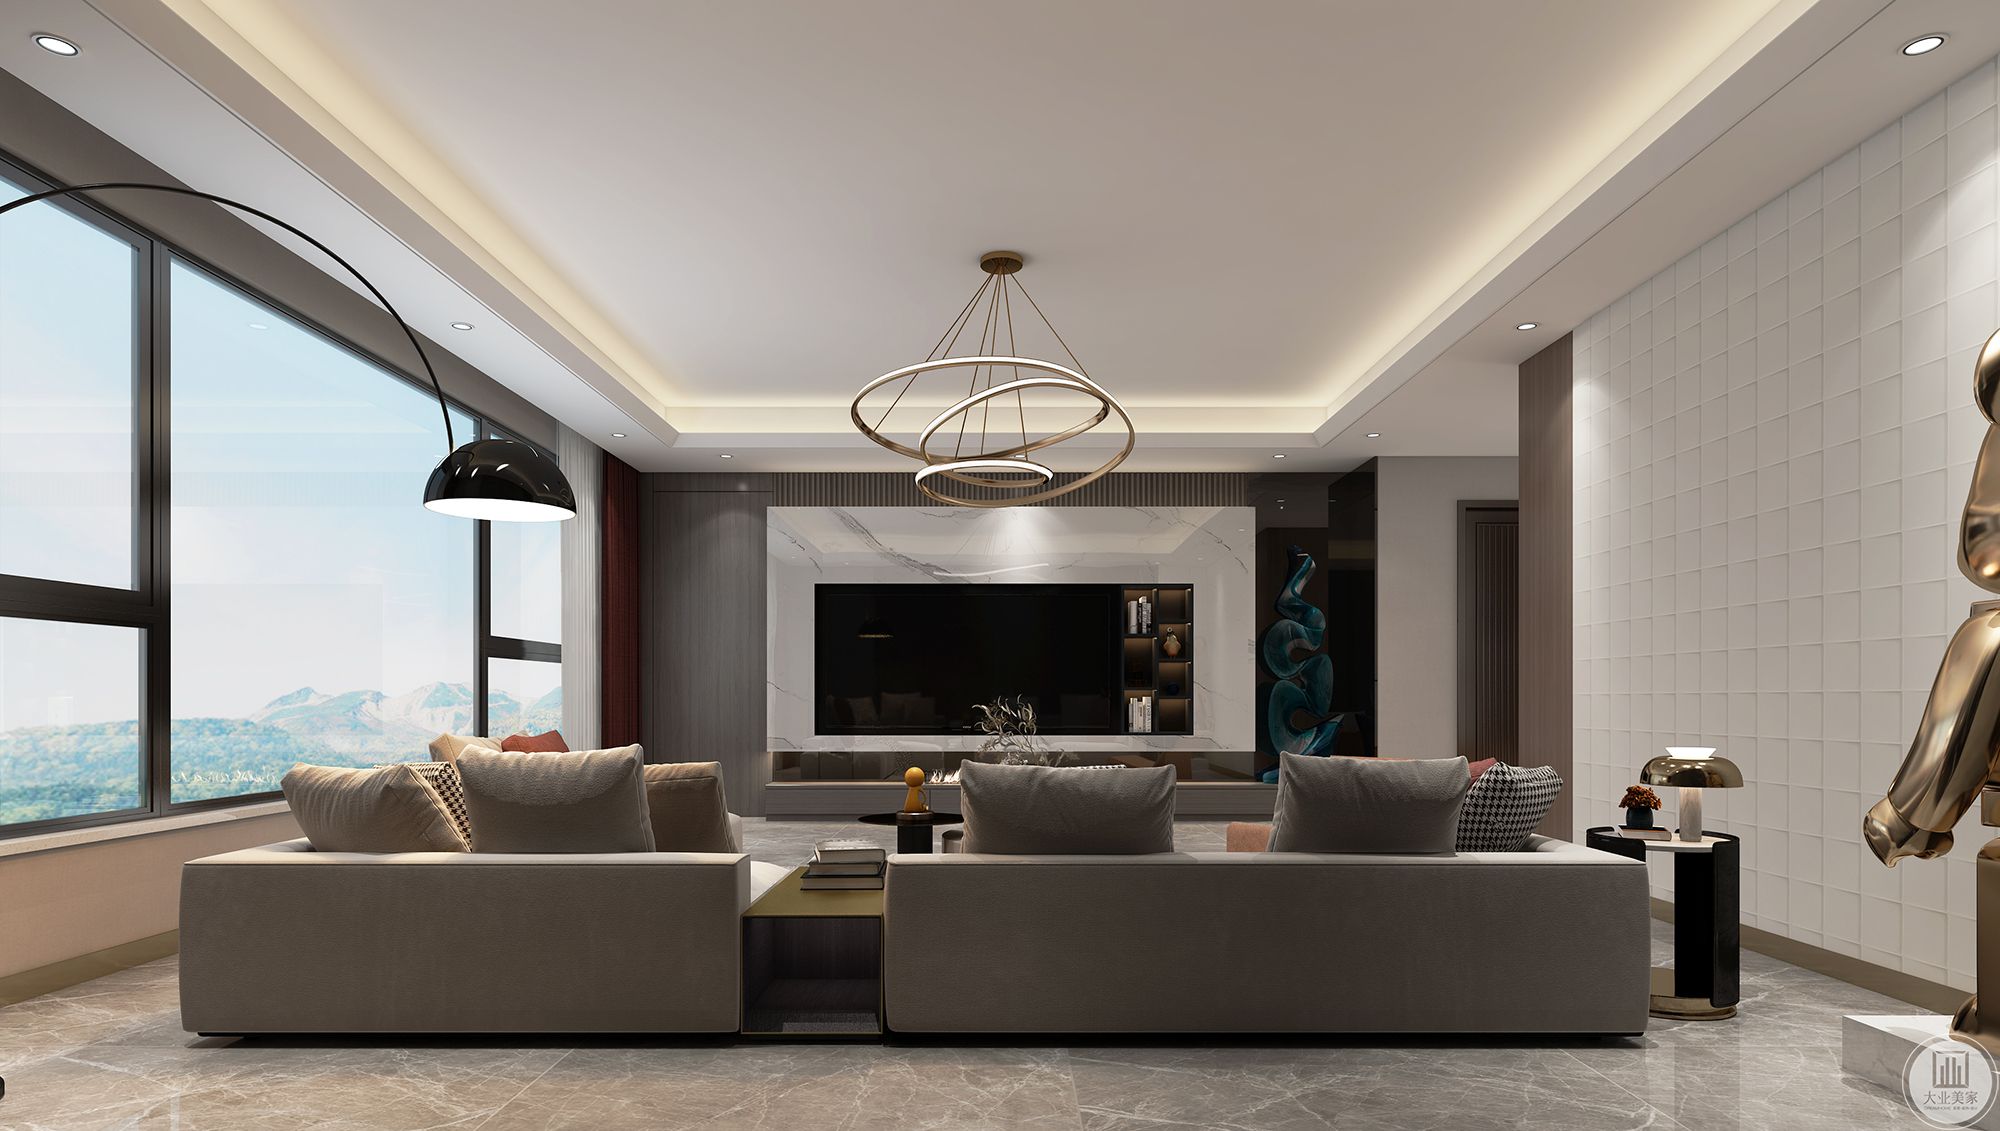 客厅现代简约风格，色调较暗，整体通过家具突出质感